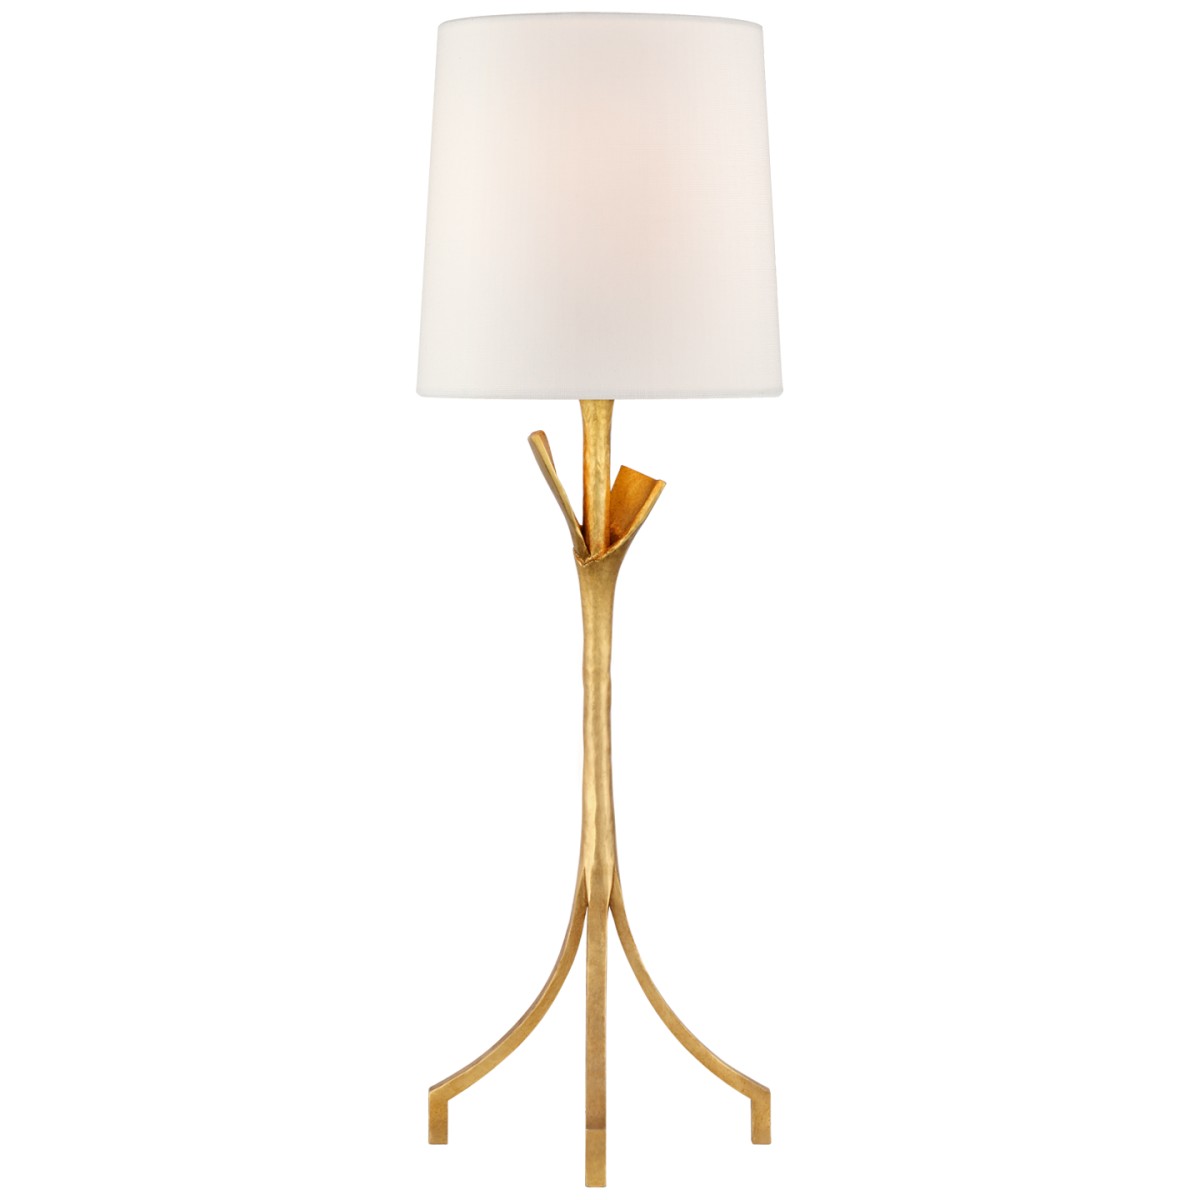 Fliana Table Lamp With Linen Shade